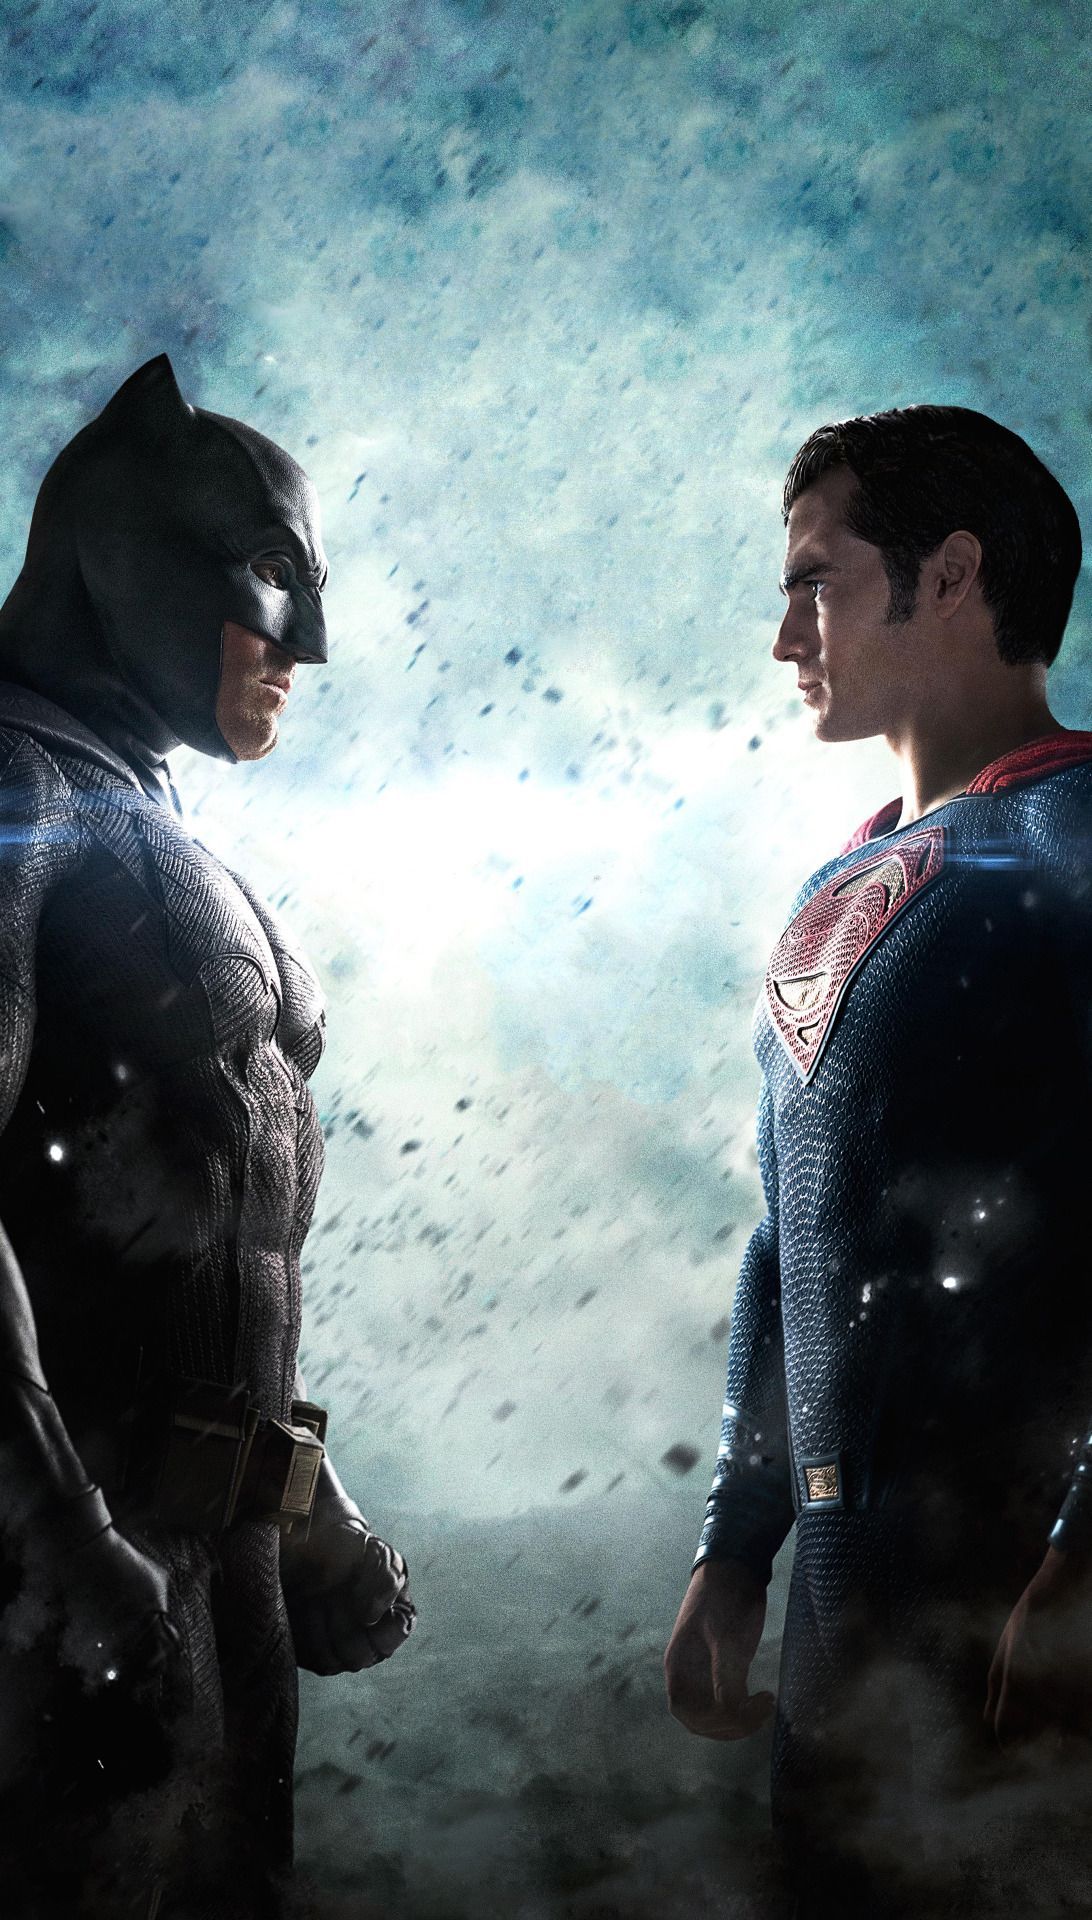 batmanreblogs: “ ericscissorhands: “ The DC Extended Universe. ” I told y'all Justice League. Superman poster, Batman vs superman poster, Batman v superman poster